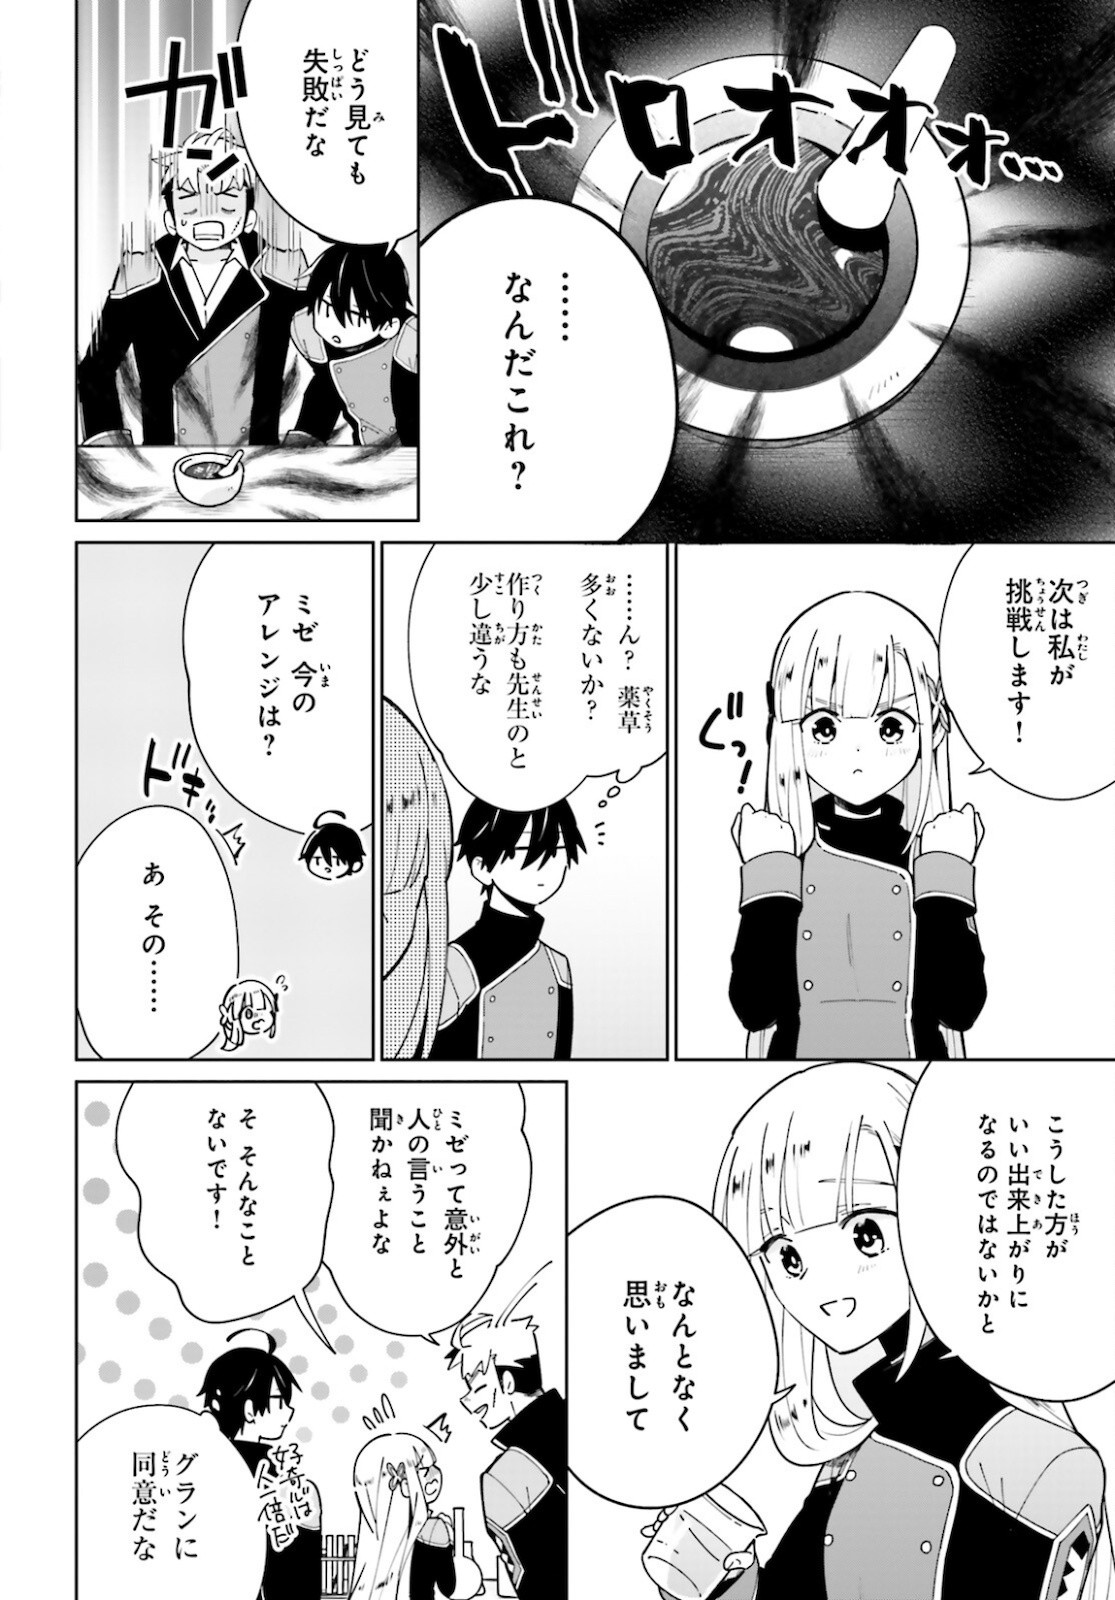 Kage-no-Eiyuu-no-Nichijou-tan-Ichi-no-Yuusha-no-Ura-de-An'yaku-Shite-ita-Saikyou-no-Eijento-Soshiki-ga-Kaitai-sareta-no-de-Shoutai-Kakushite-Hito-nami-no-Nichijou-o-Ouka-suru - Chapter 11 - Page 4